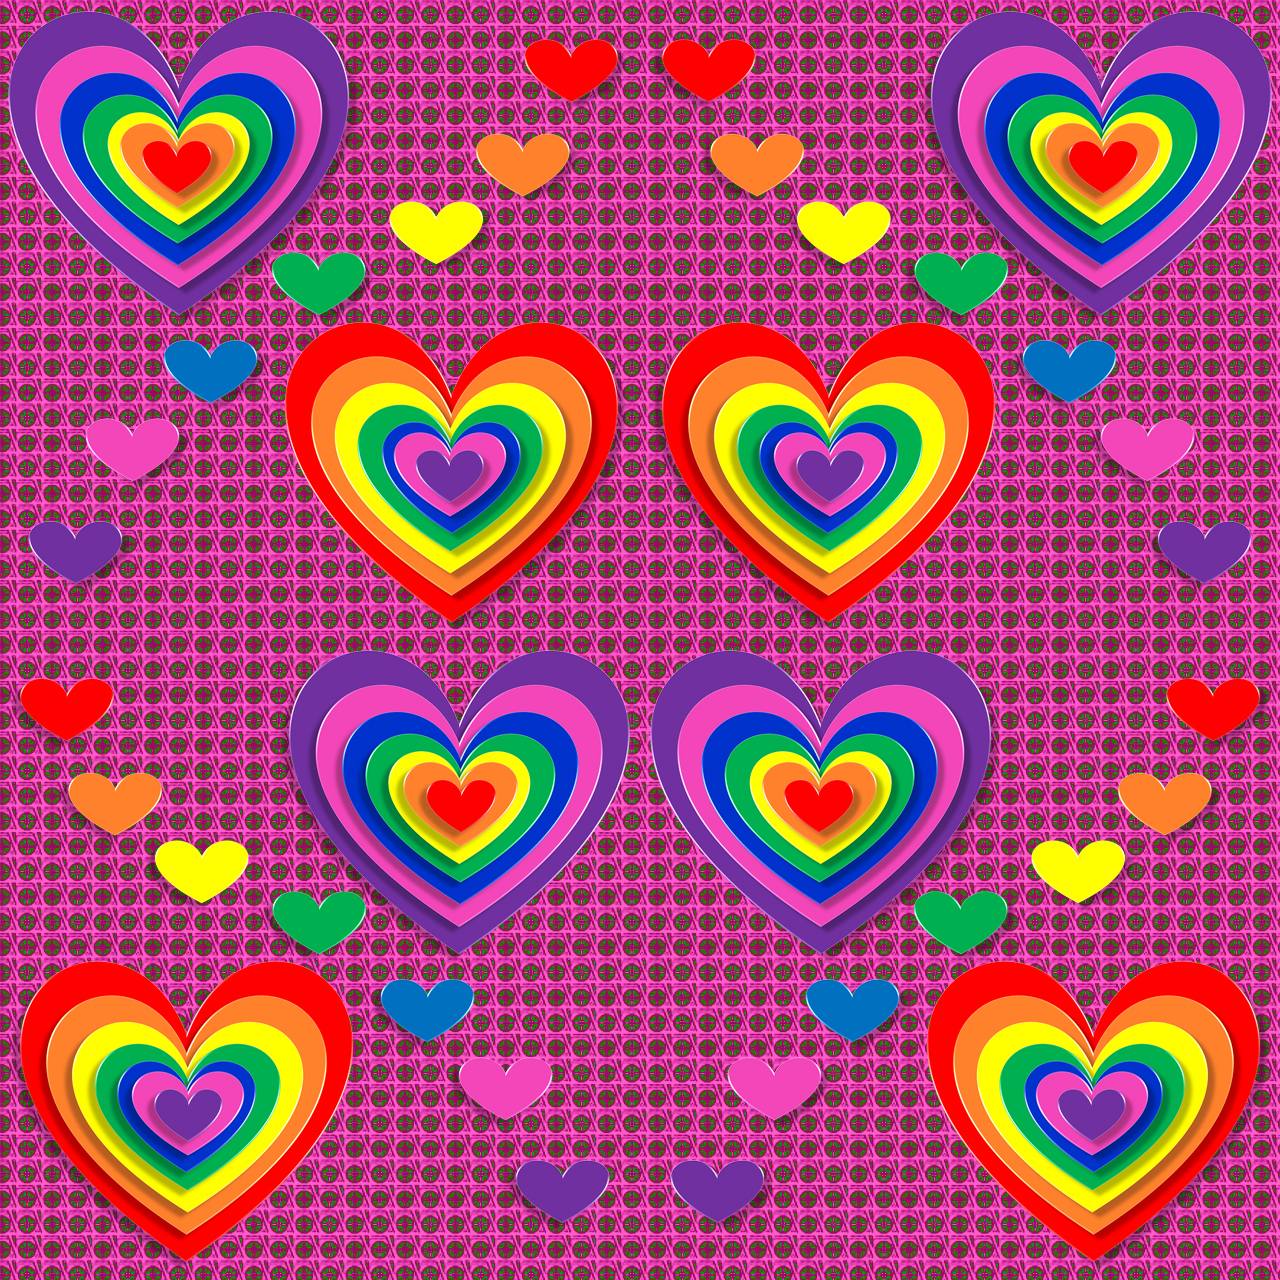 Rainbow Love Hearts Pattern - Heart , HD Wallpaper & Backgrounds